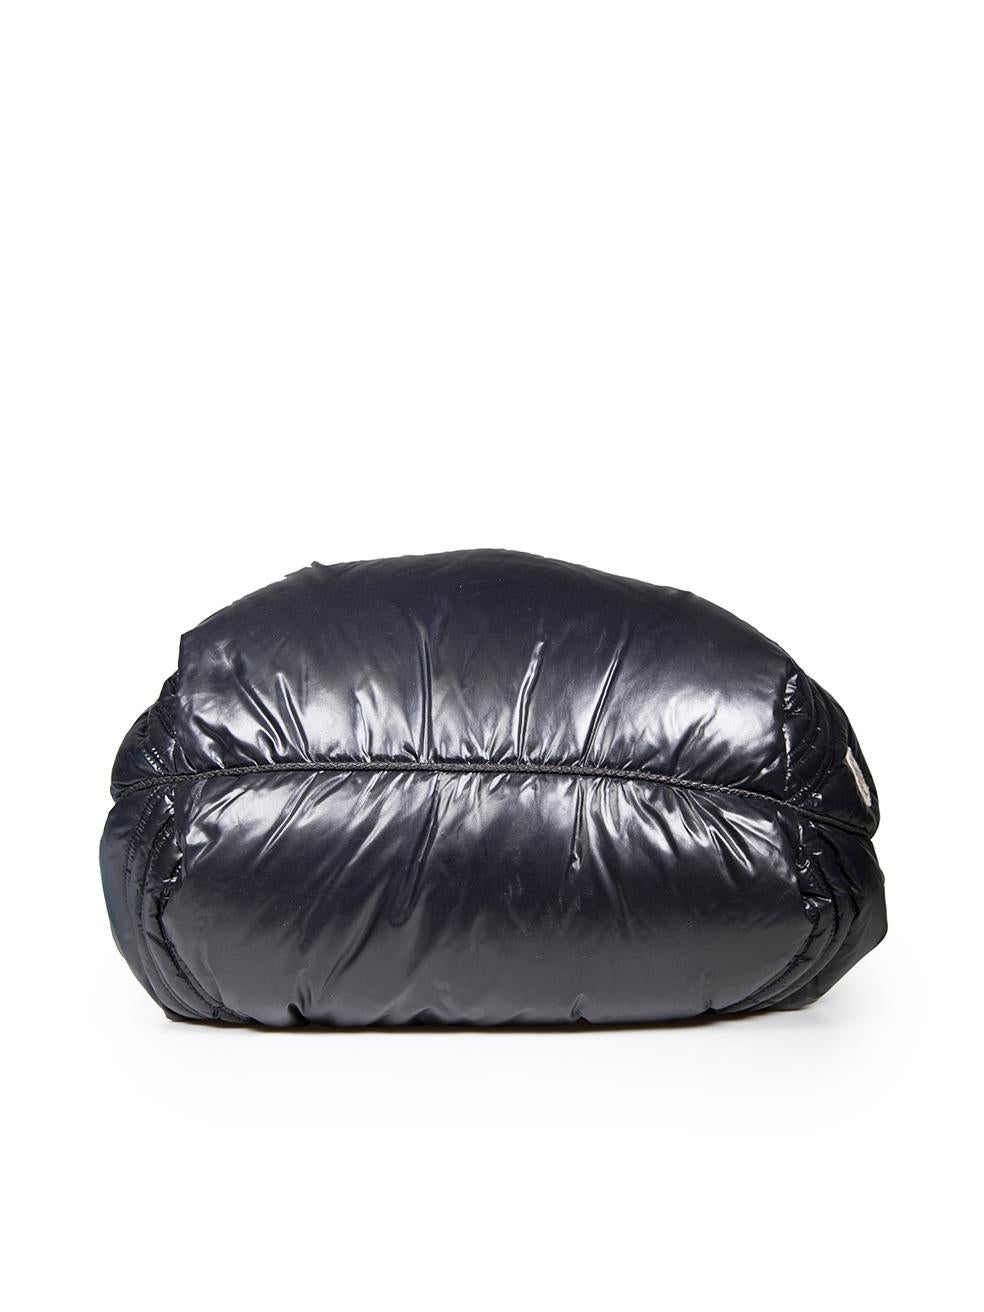 Women's Fendi Fendi x Moncler Black Puffer Spy Bag For Sale